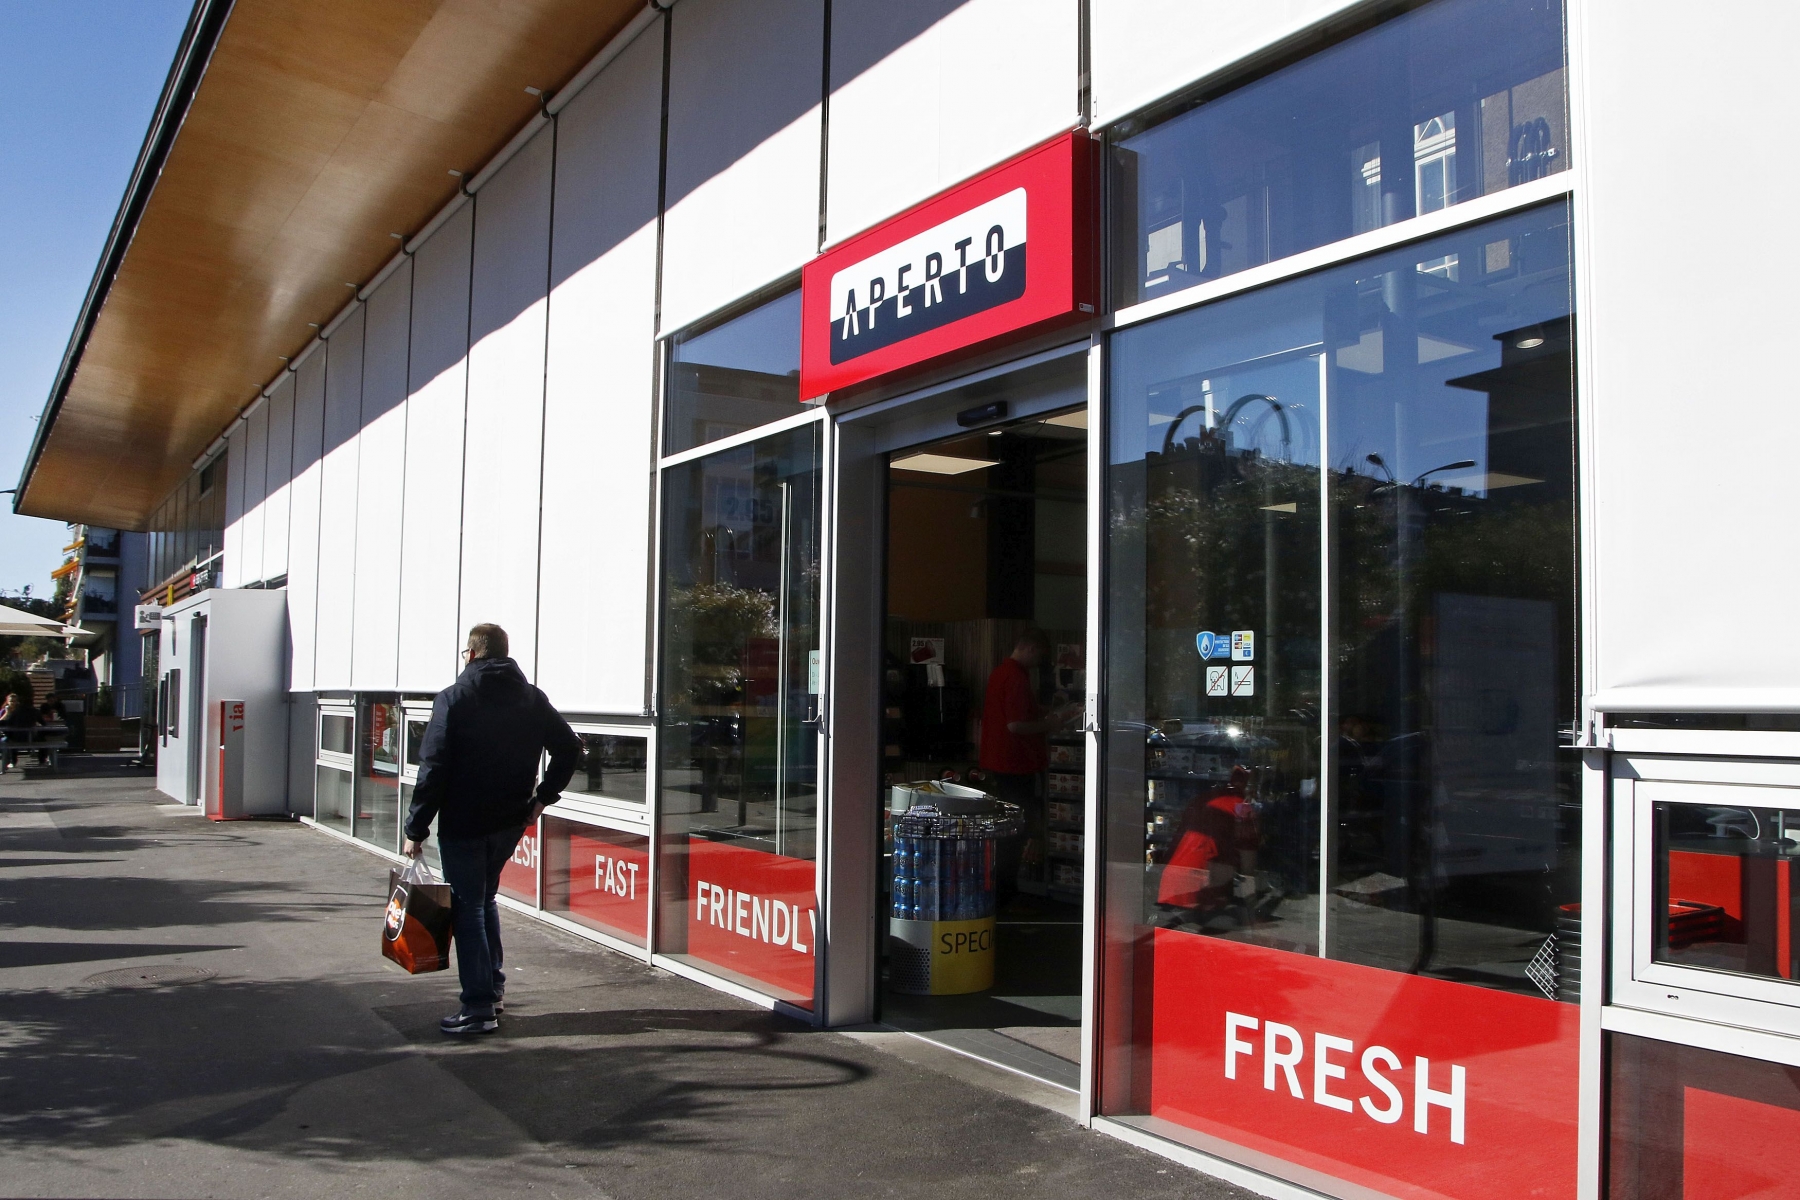 Ouvert initialement sur la plac en 2011, le magasin Aperto s'étale désormais à l'intérieur de la gare sur des surfaces agrandies.